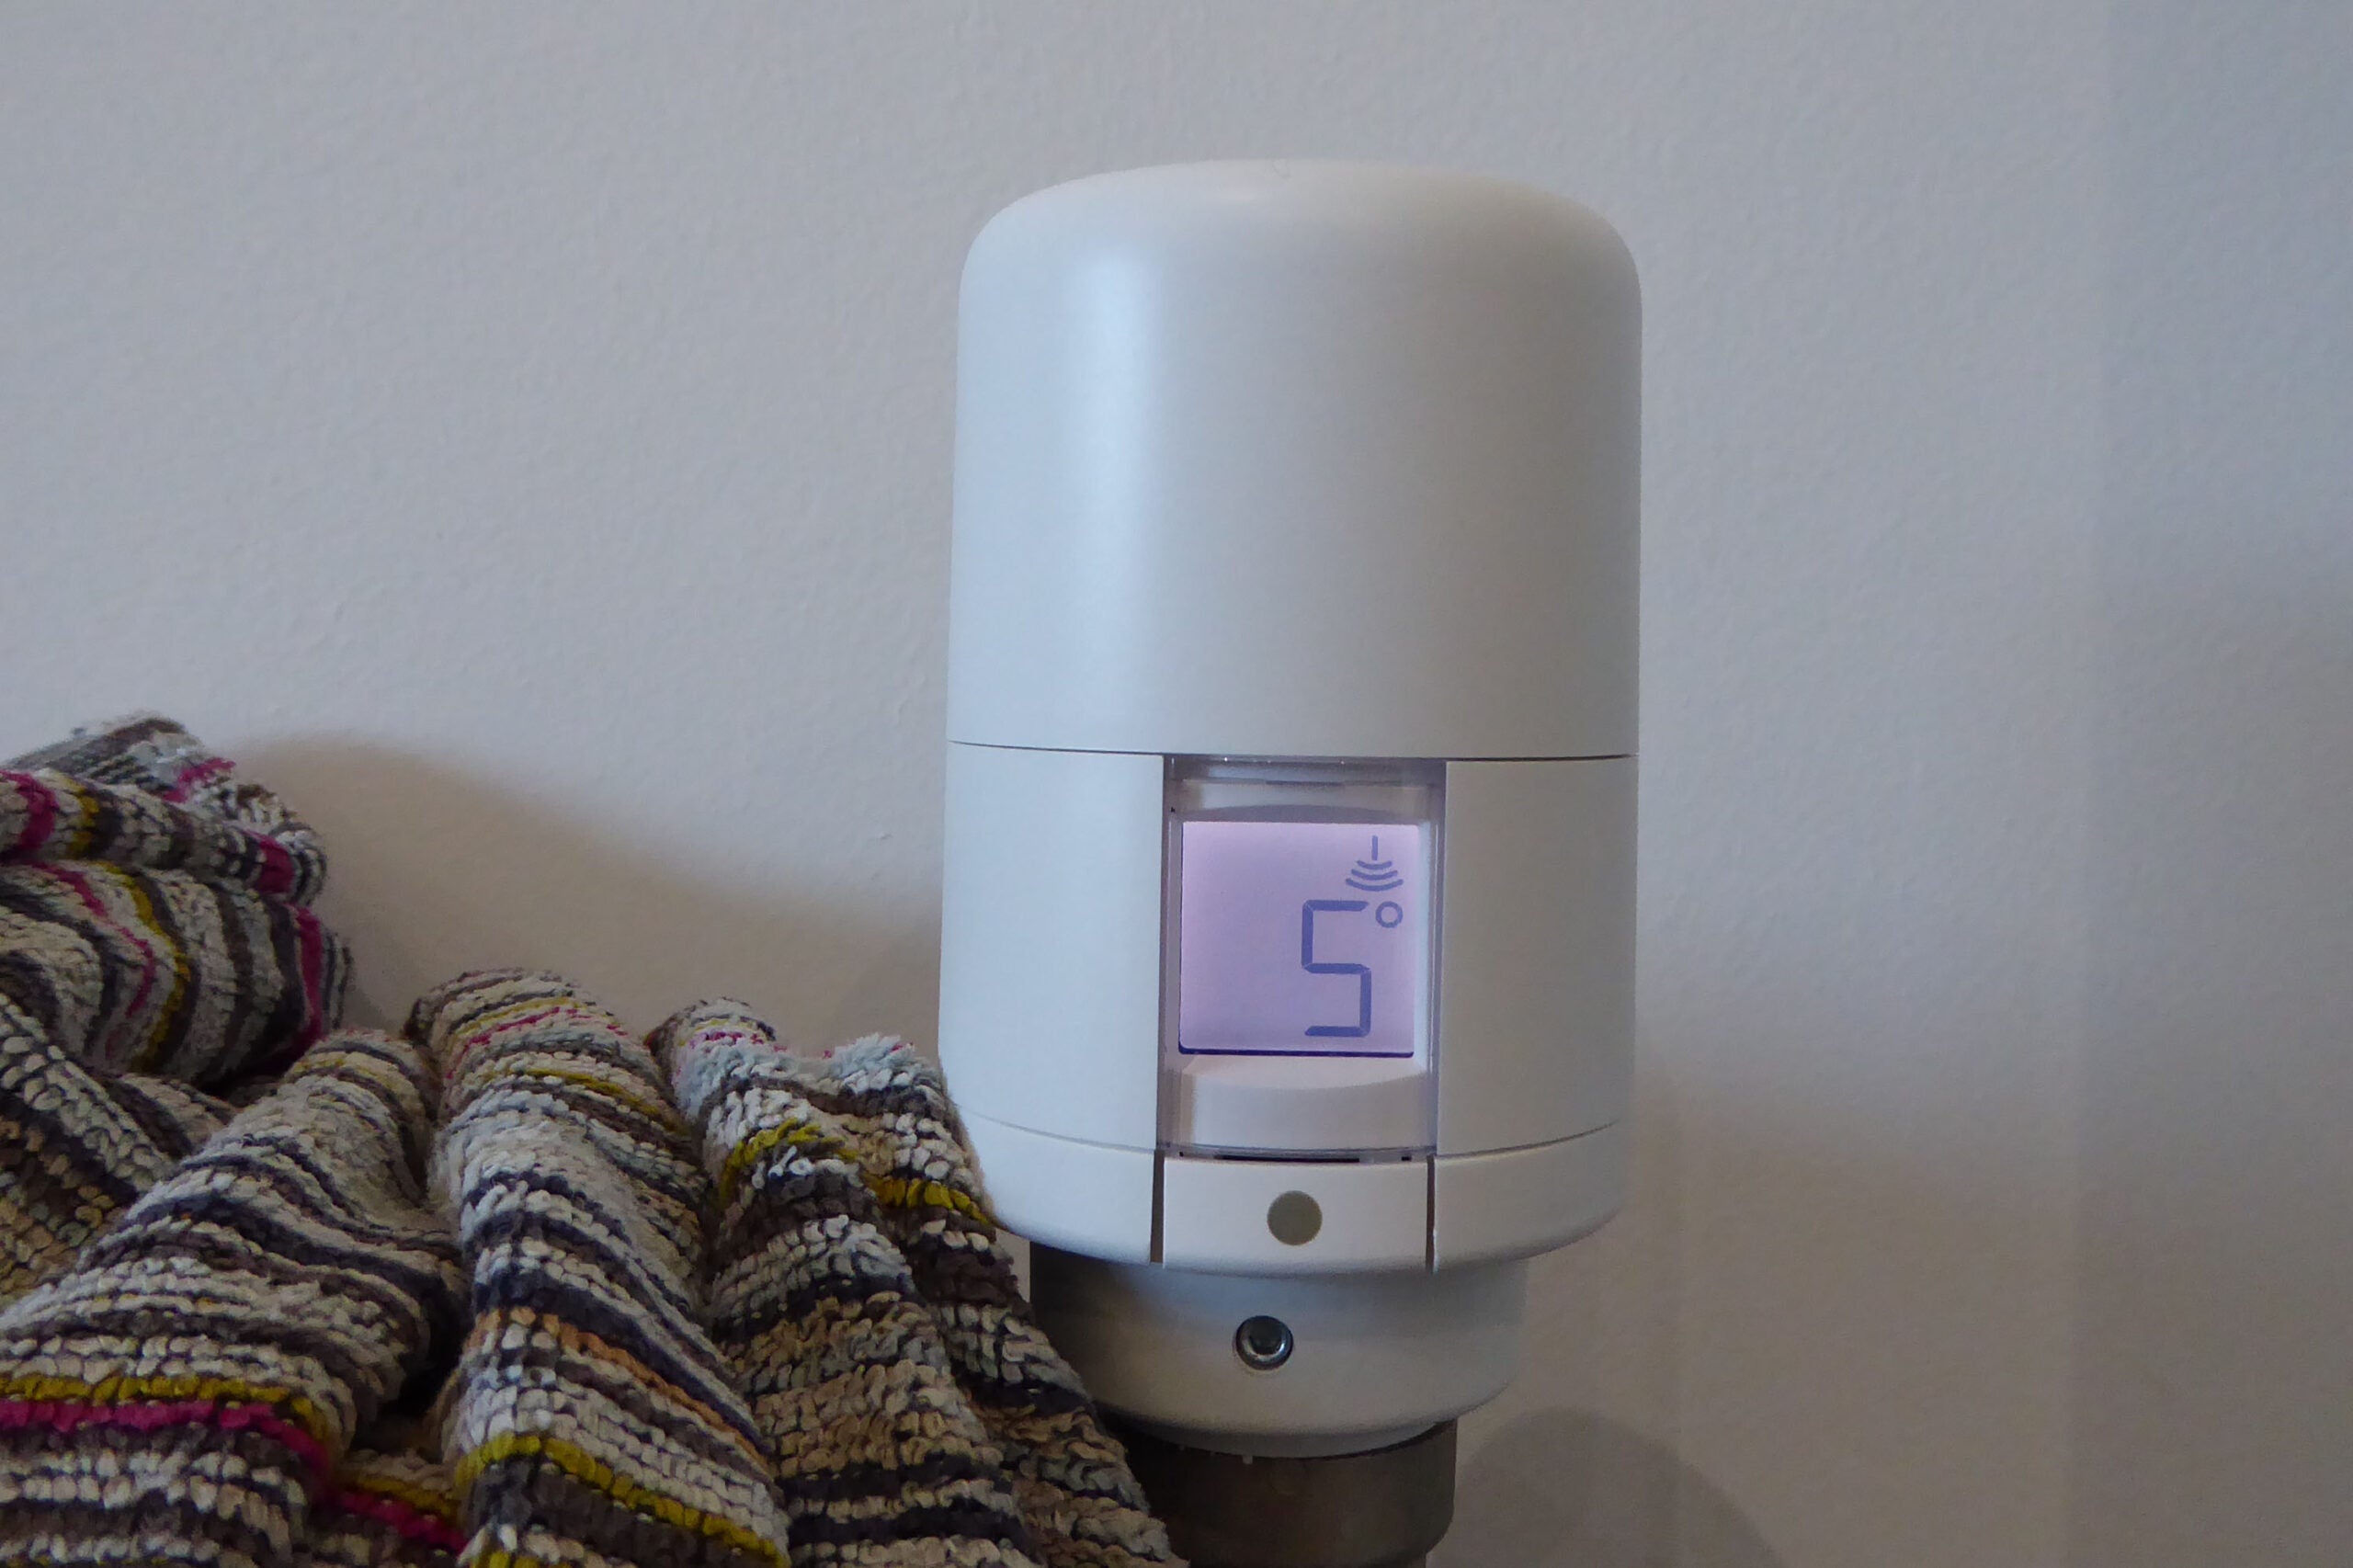 Genius Hub radiator thermostat temperature